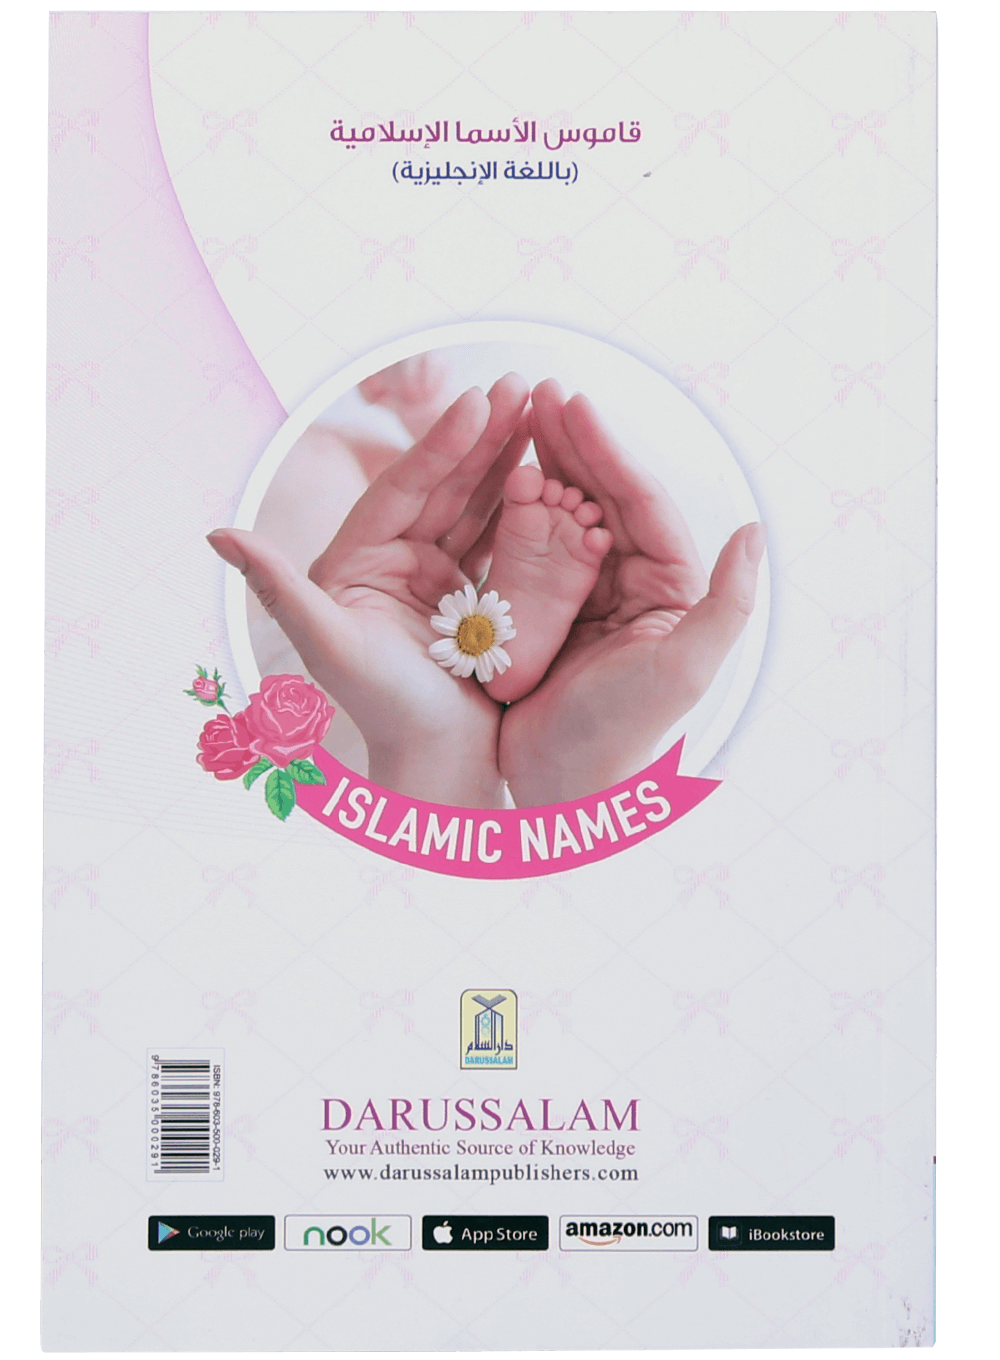 darussalam-2017-10-03-12-08-57dictonary-of-islamic-names-(5)